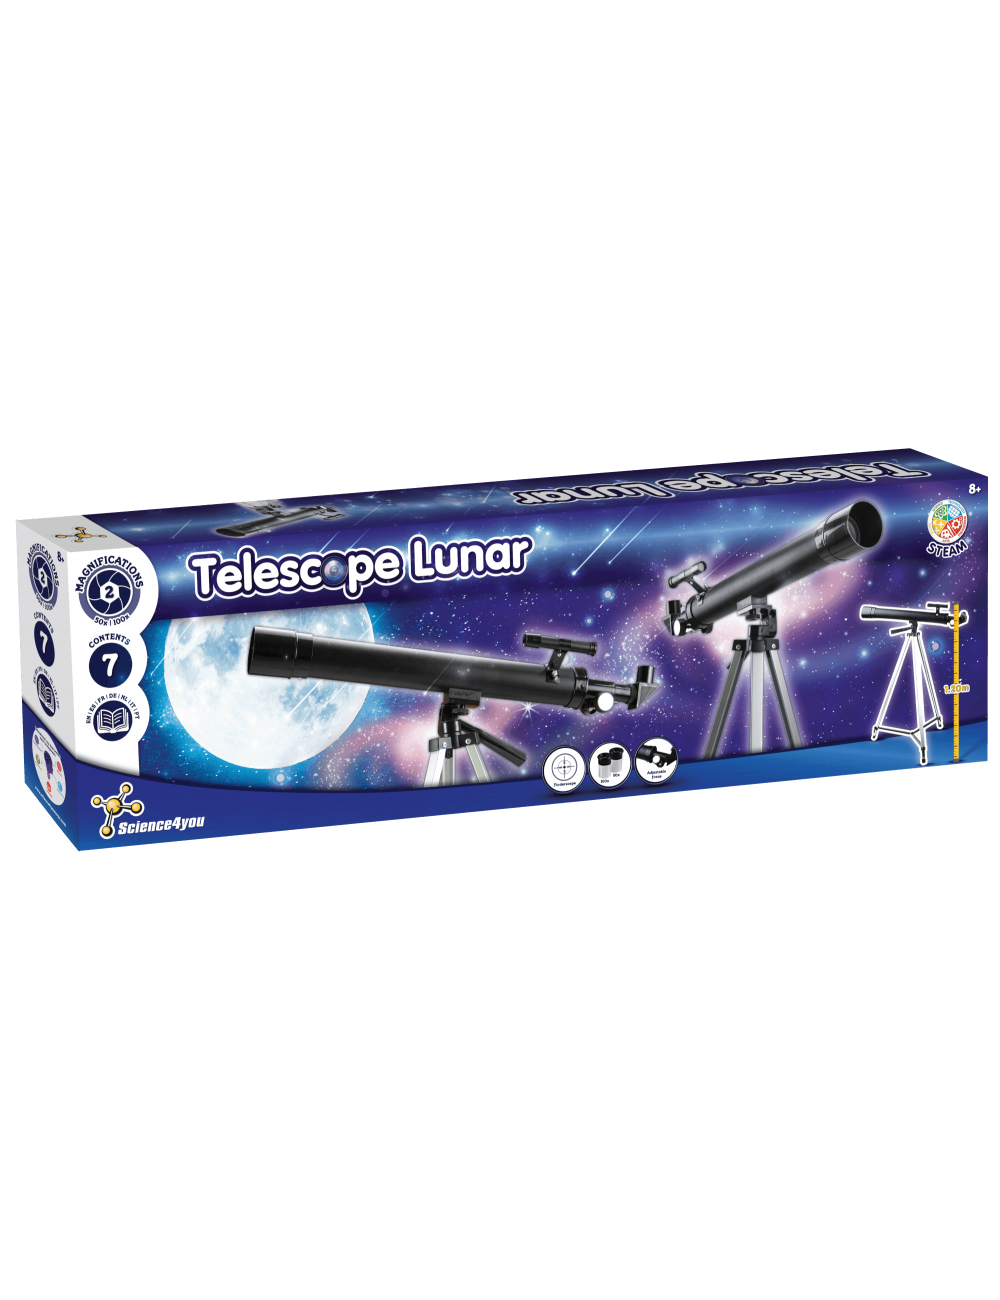 telescopio facil de usar para niños